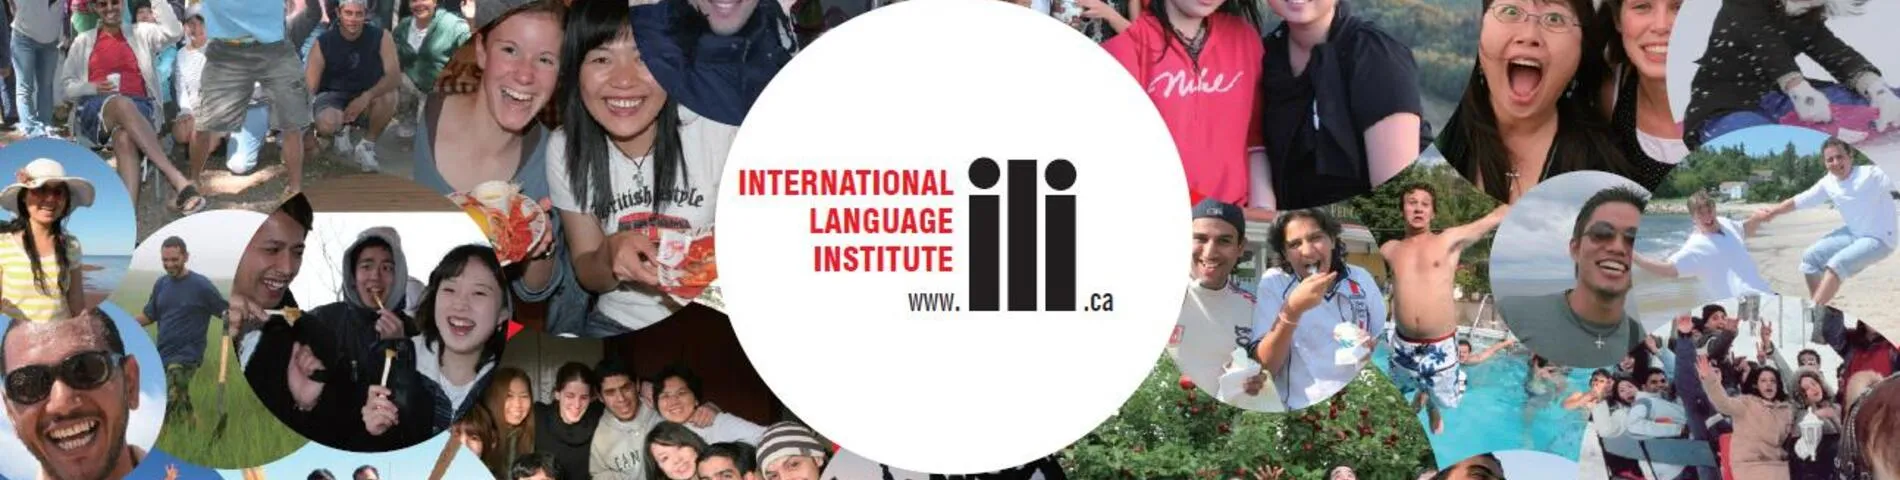 ILI - International Language Institute รูปภาพ 1